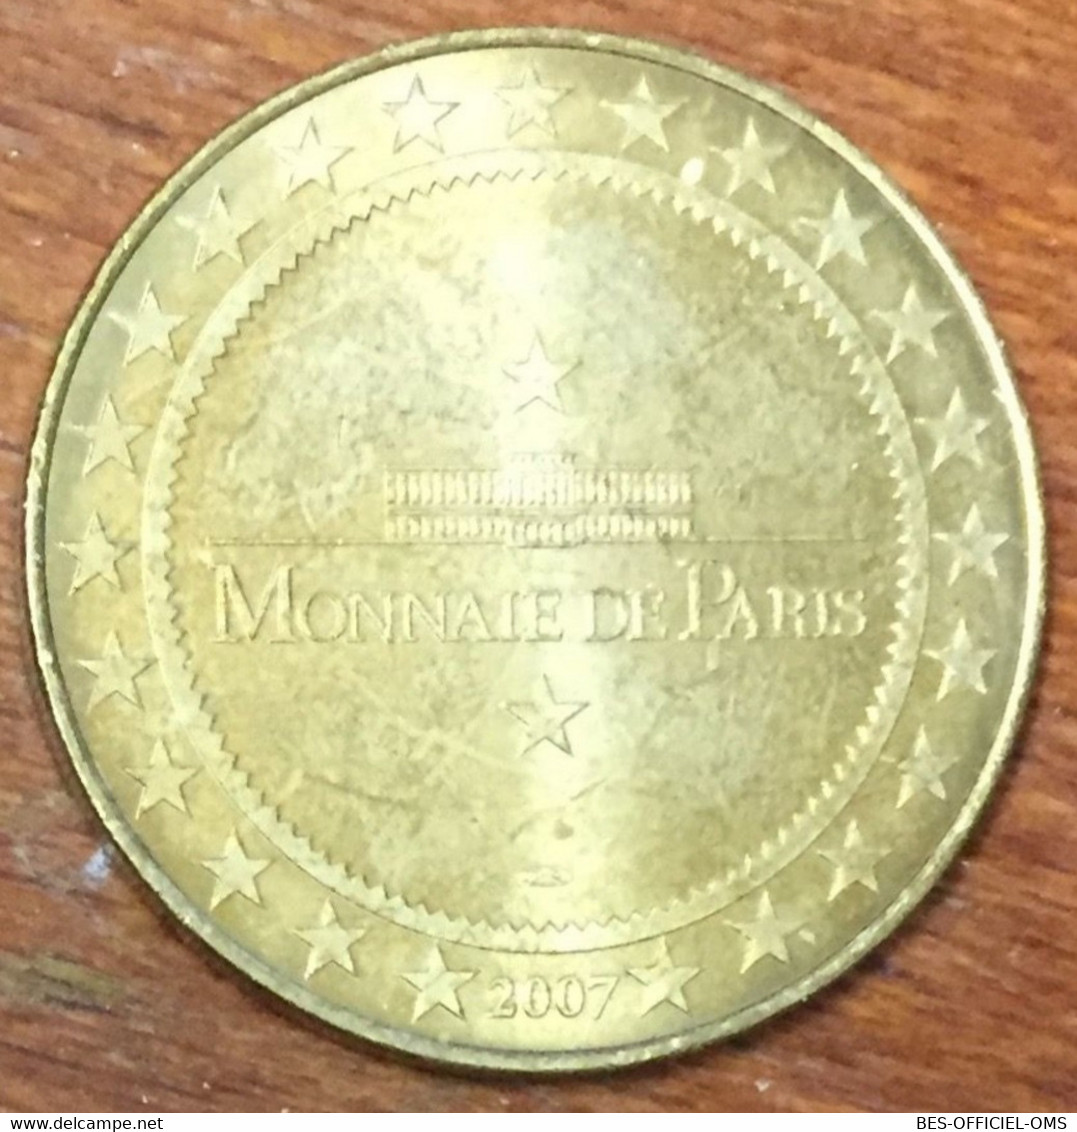 17 ROYAN JARDINS DU MONDE MDP 2007 MEDAILLE SOUVENIR MONNAIE DE PARIS JETON TOURISTIQUE MEDALS COINS TOKENS - 2007